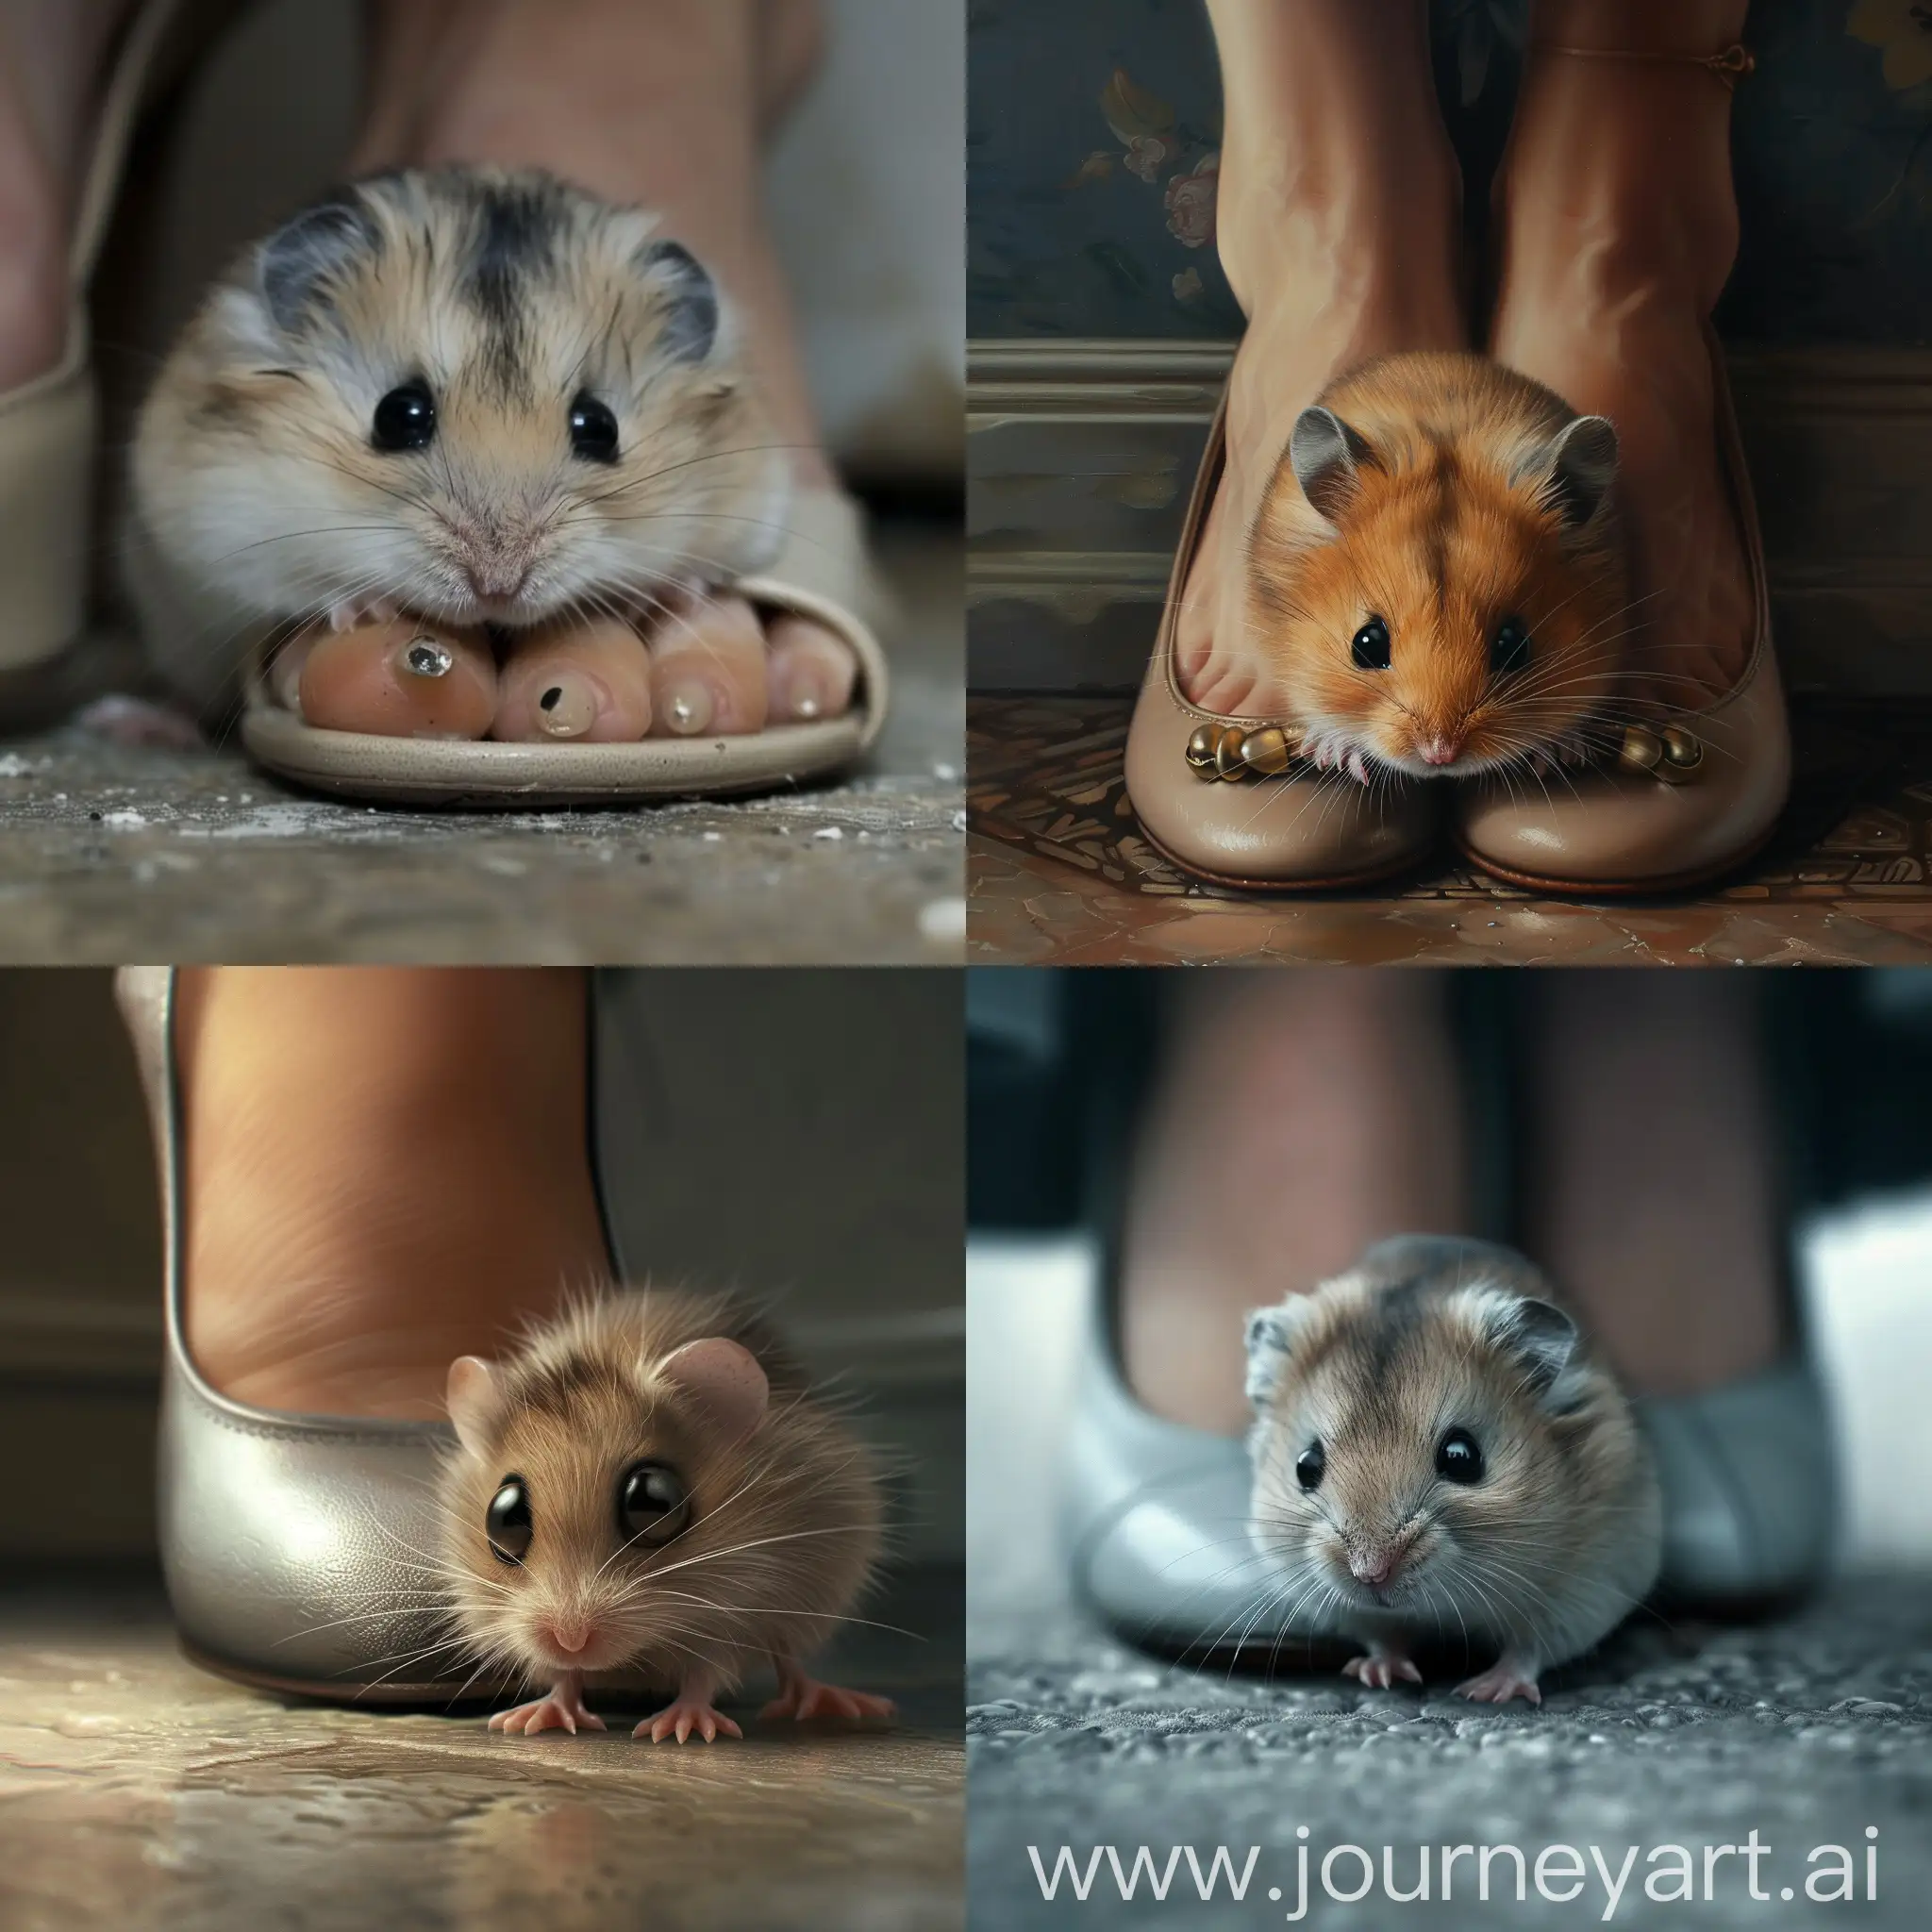 Sad-Hamster-Crushed-under-Womans-Heel